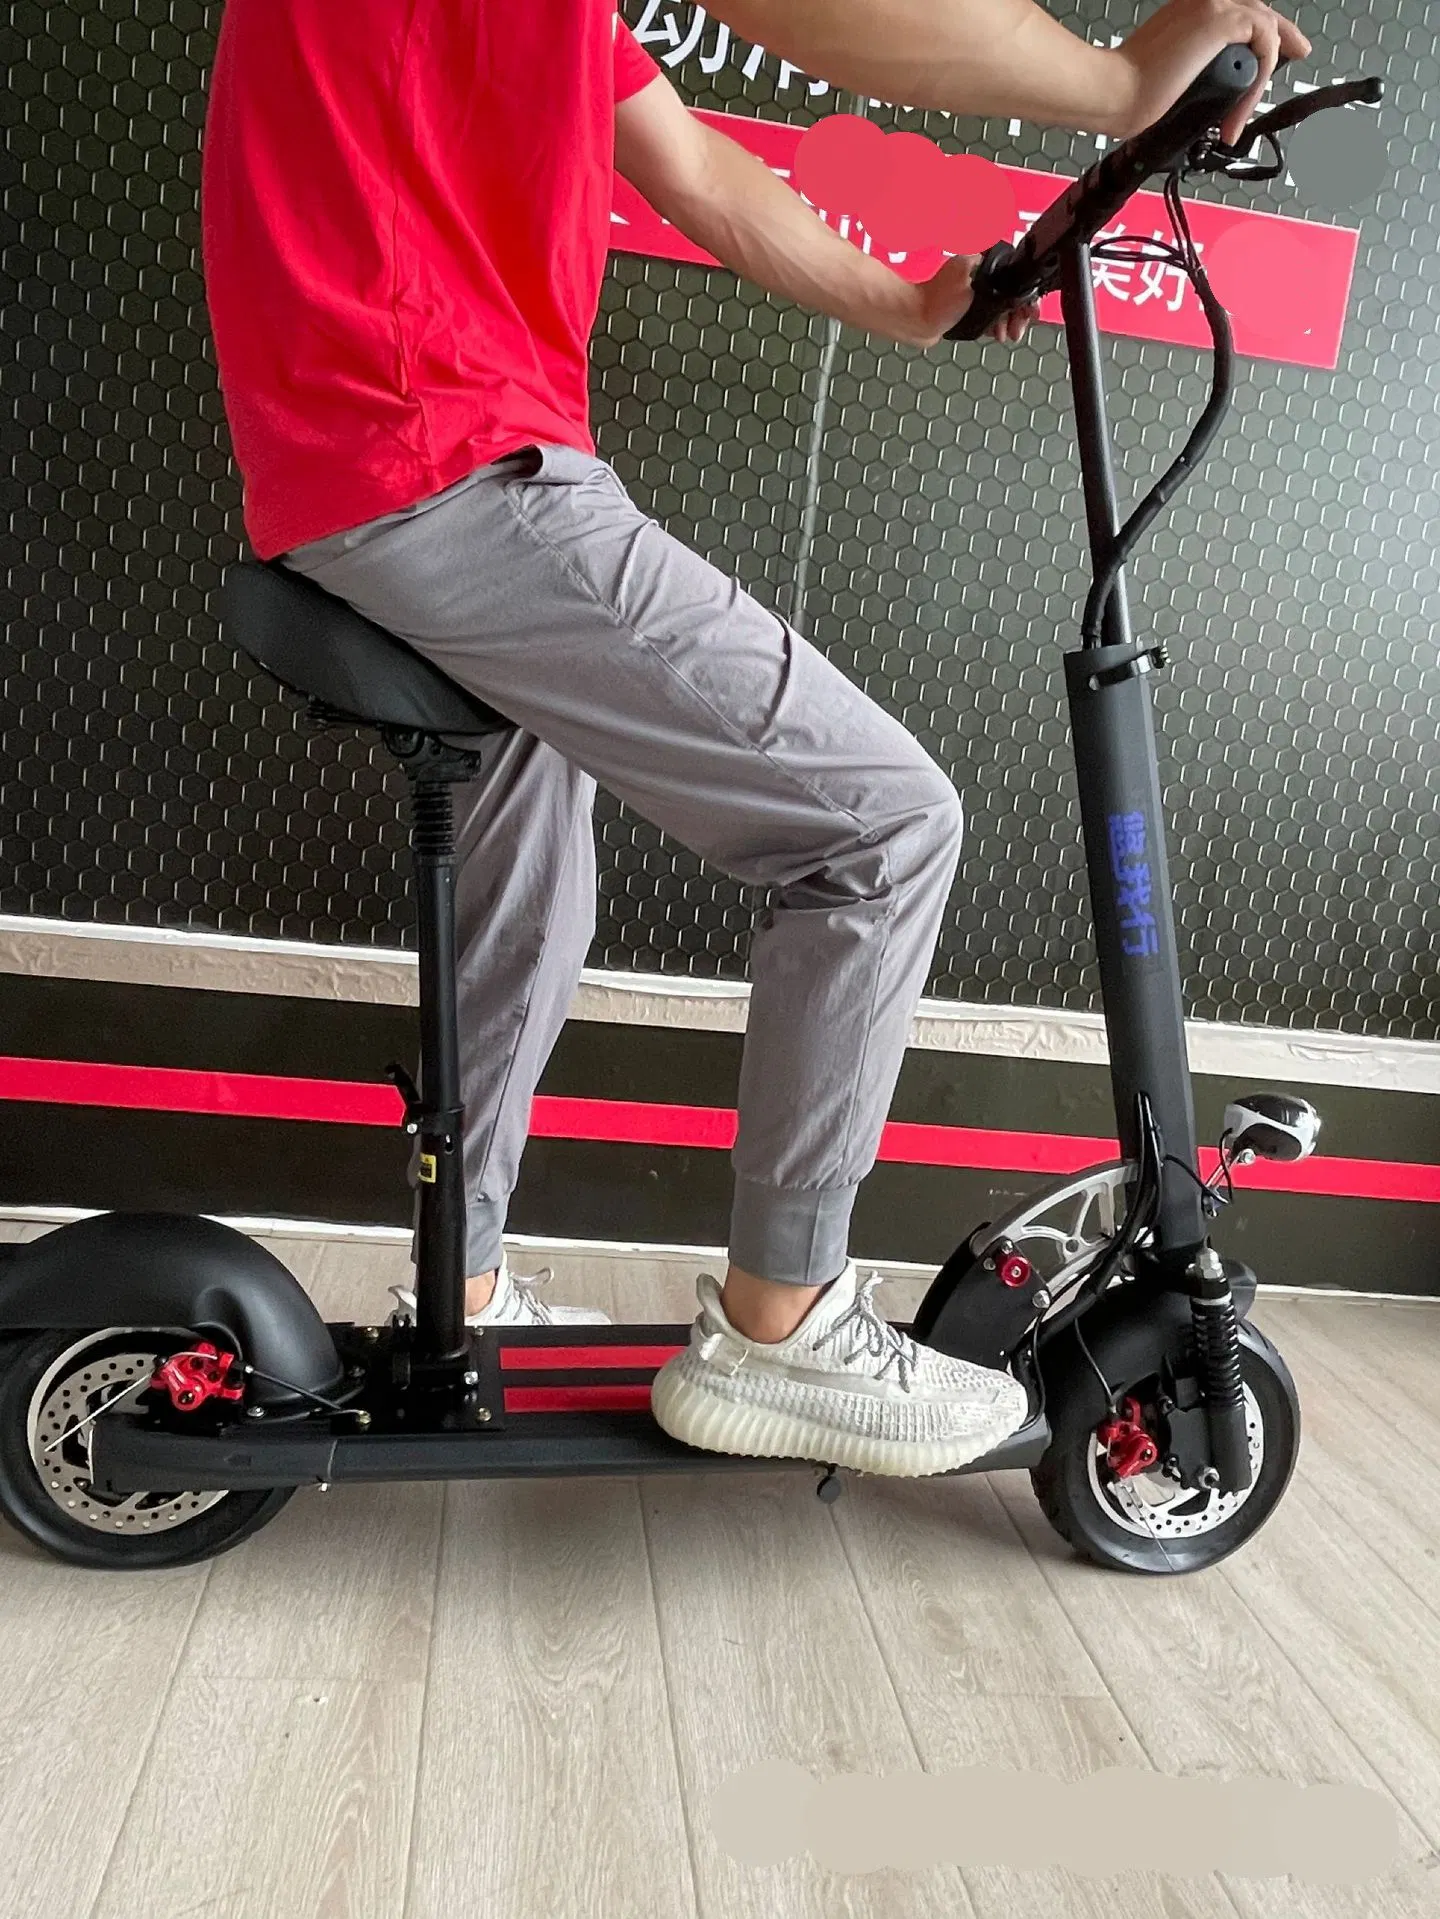 Магнитный держатель и нога для терапии с физической поддержкой упражнены в верхней и нижней части Электрический велосипед для восстановления баланса конечностей